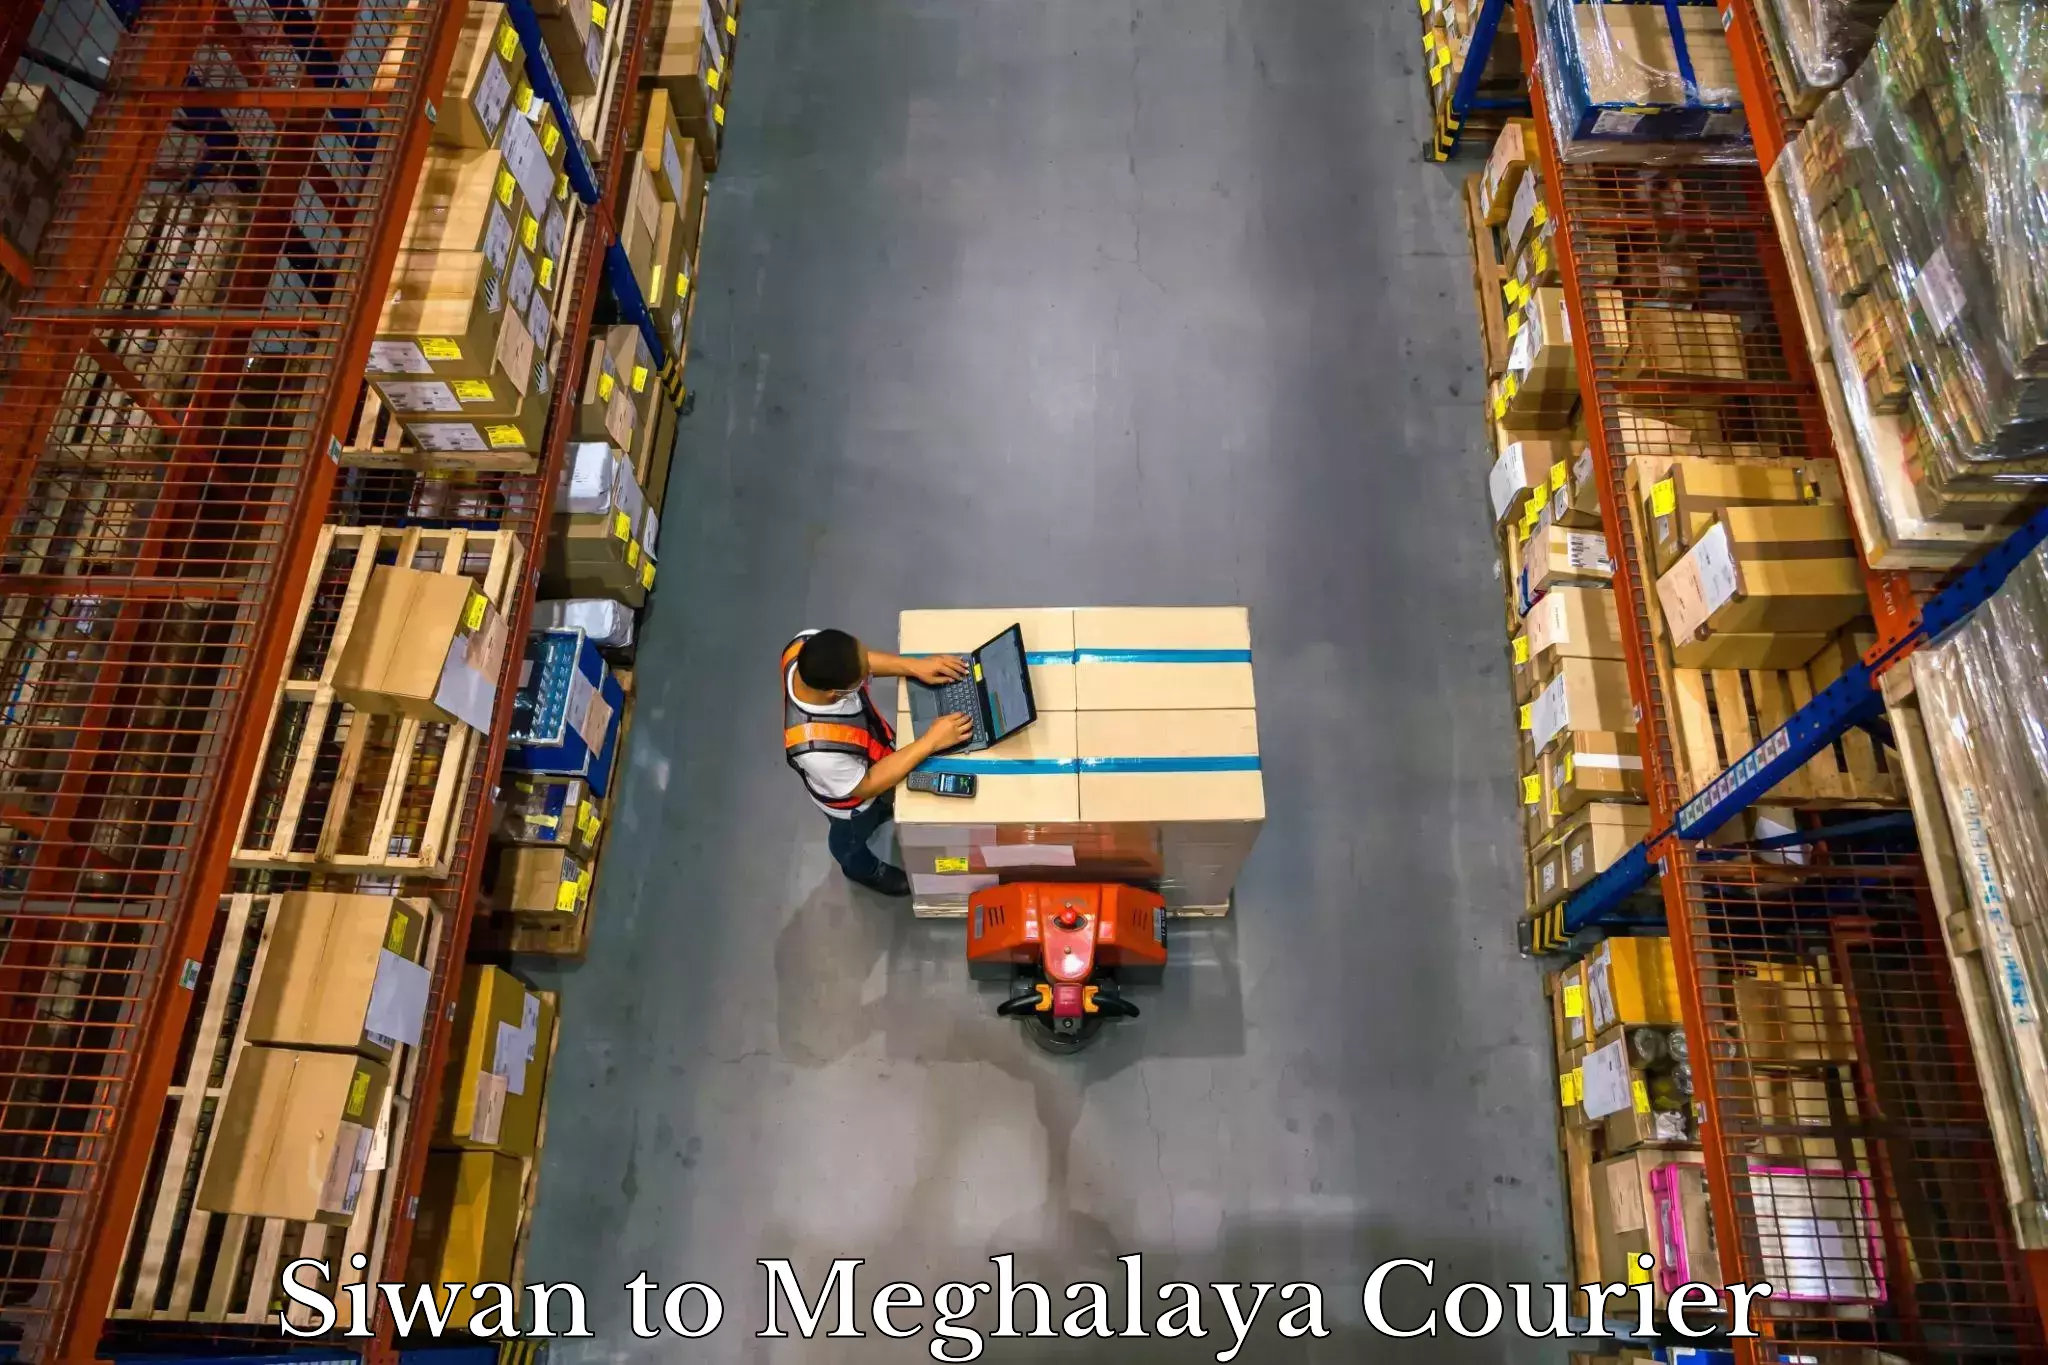 Hassle-free luggage shipping in Siwan to Meghalaya